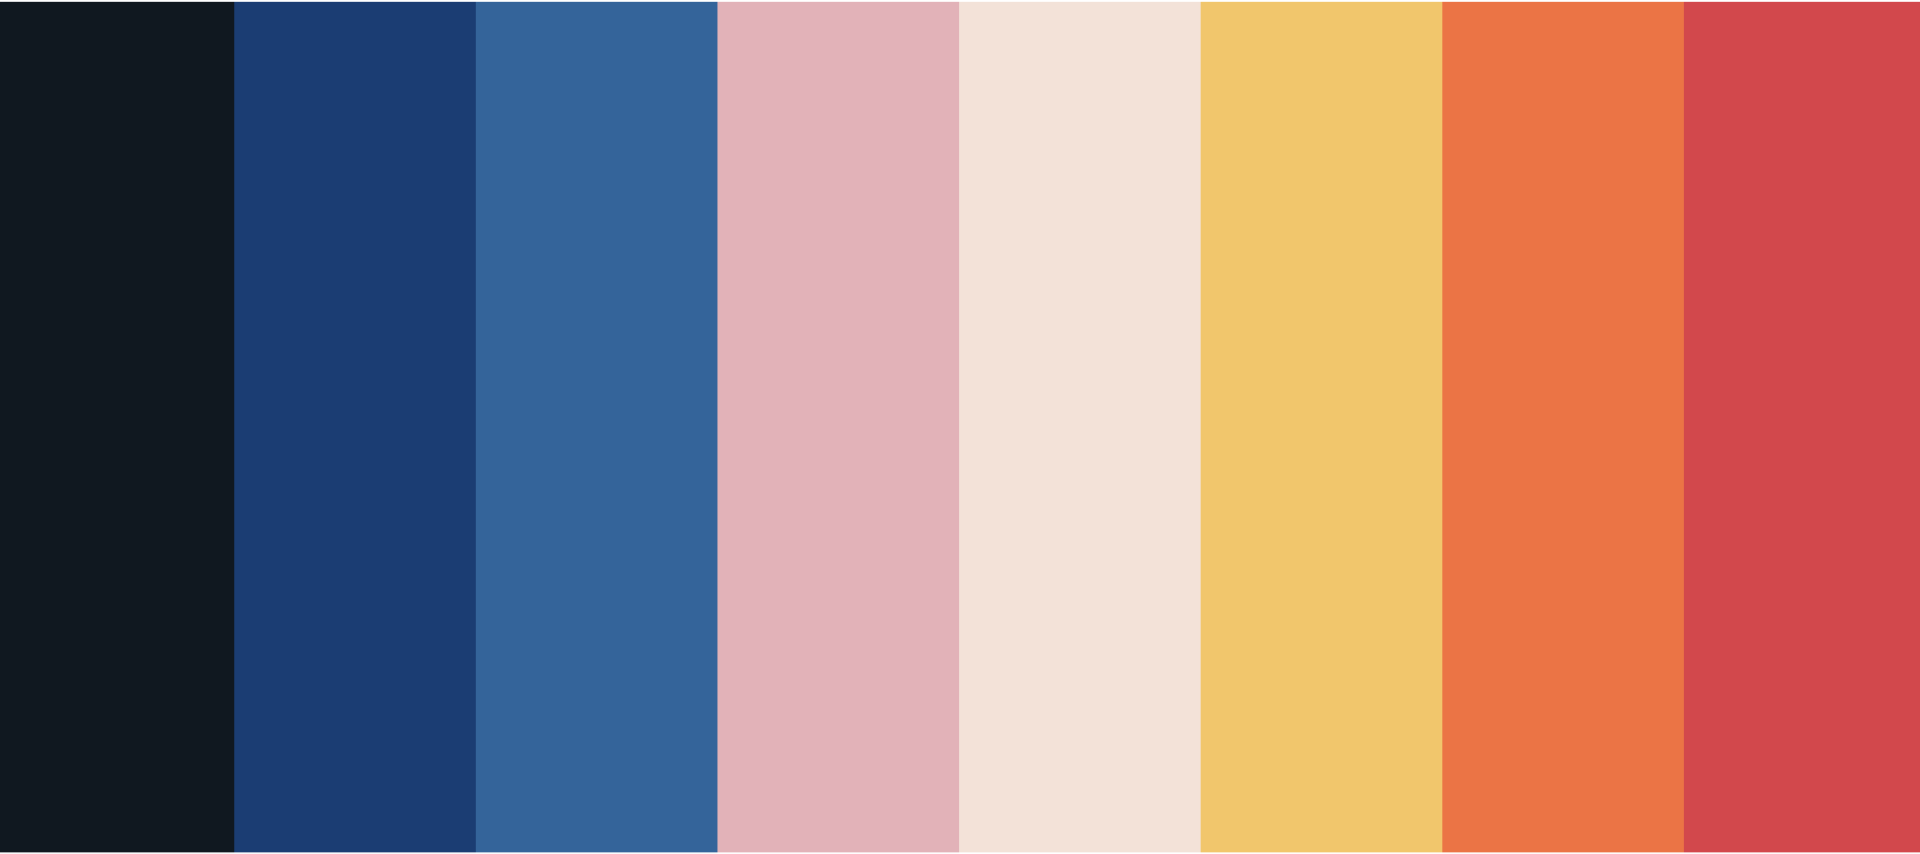 8 rectangles de couleur allant du bleu foncé au rouge en passant par le rose : c'est la palette Cali'co